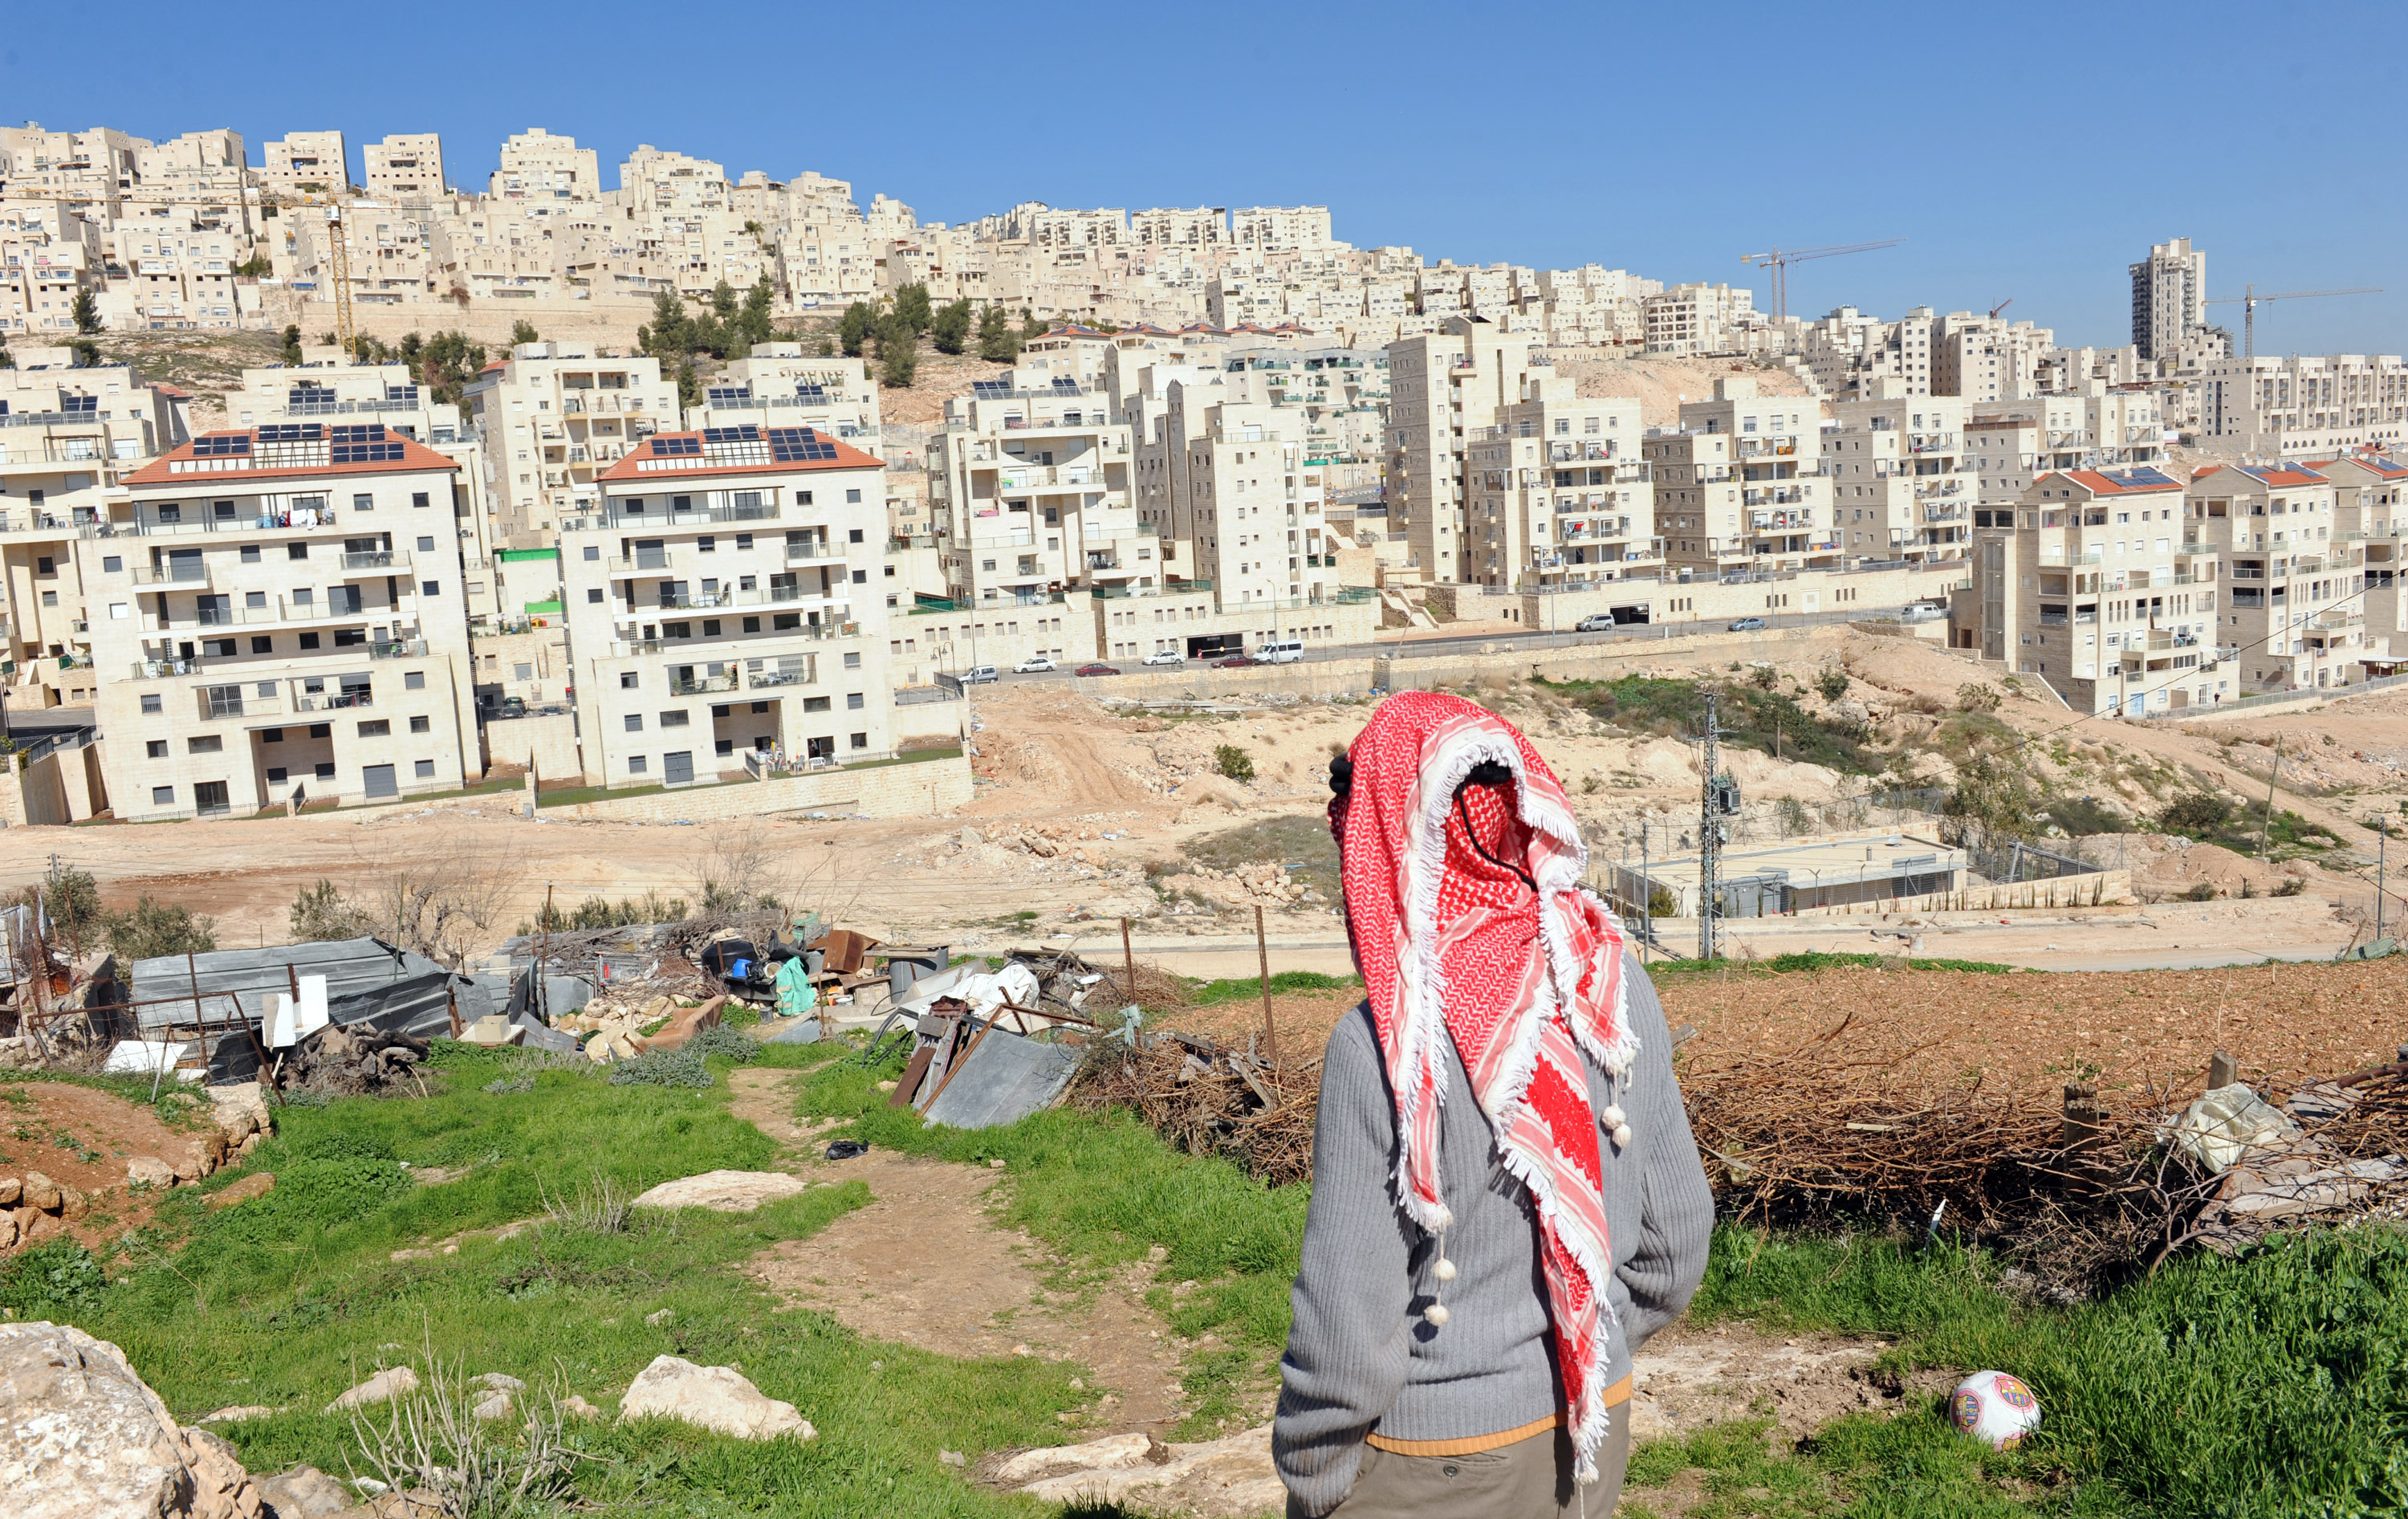 الخارجية الفلسطينية : المصادقة على بناء مئات الوحدات الاستيطانية استكمالا لتهويد القدس وفصلها عن محيطها